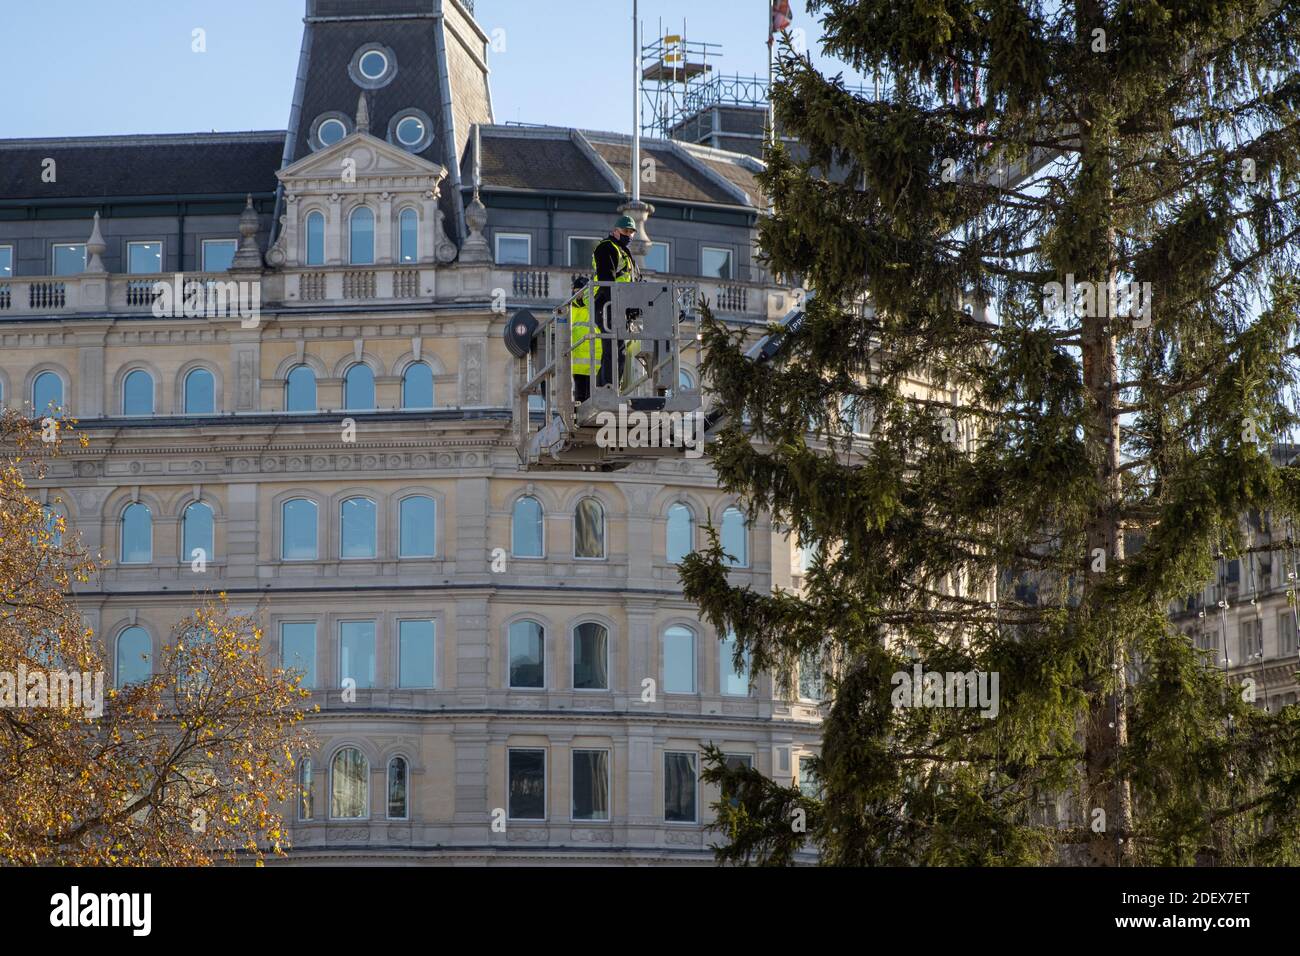 Westminster, Londres, Royaume-Uni. 1er décembre 2020. Les travailleurs se préparent à ériger l'arbre de Noël annuel à Trafalgar Square. Banque D'Images